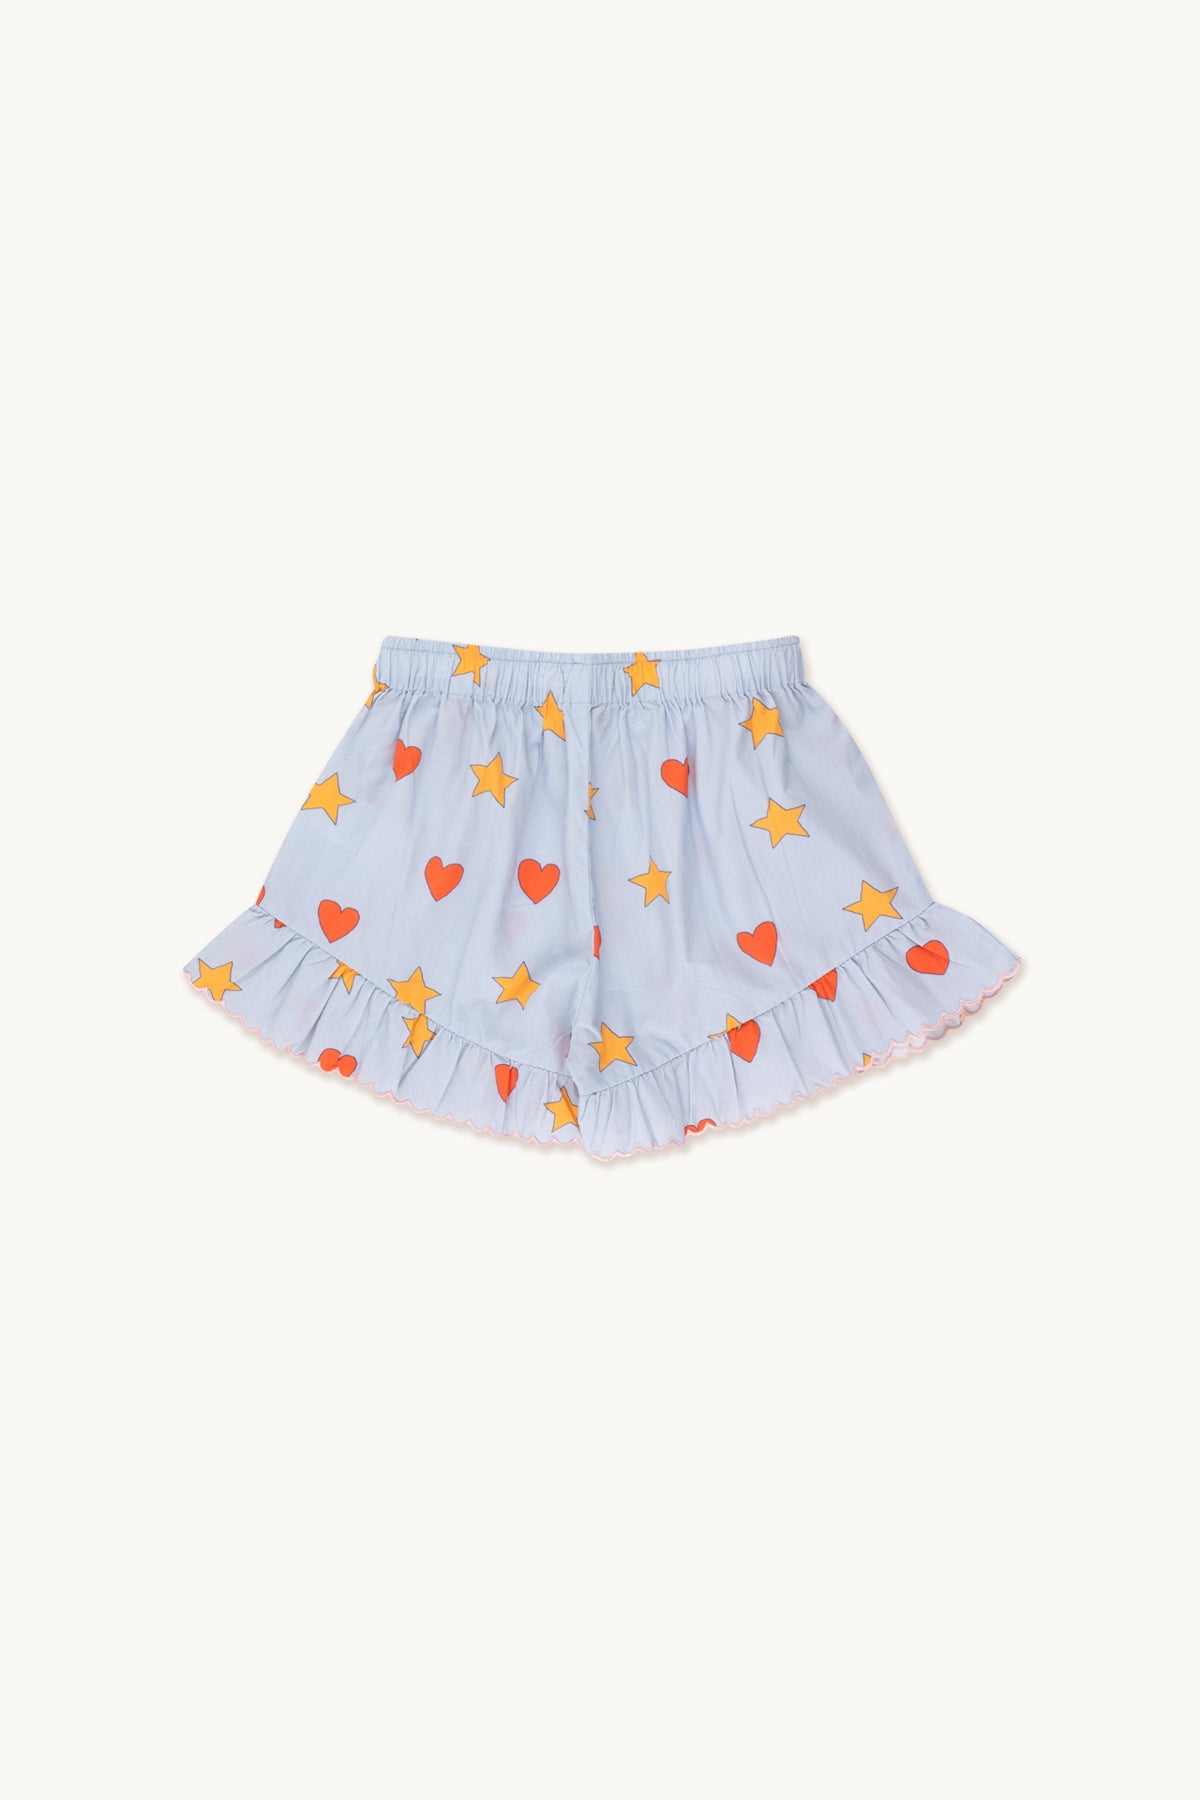 Tiny Cottons - hearts stars shorts - sky grey